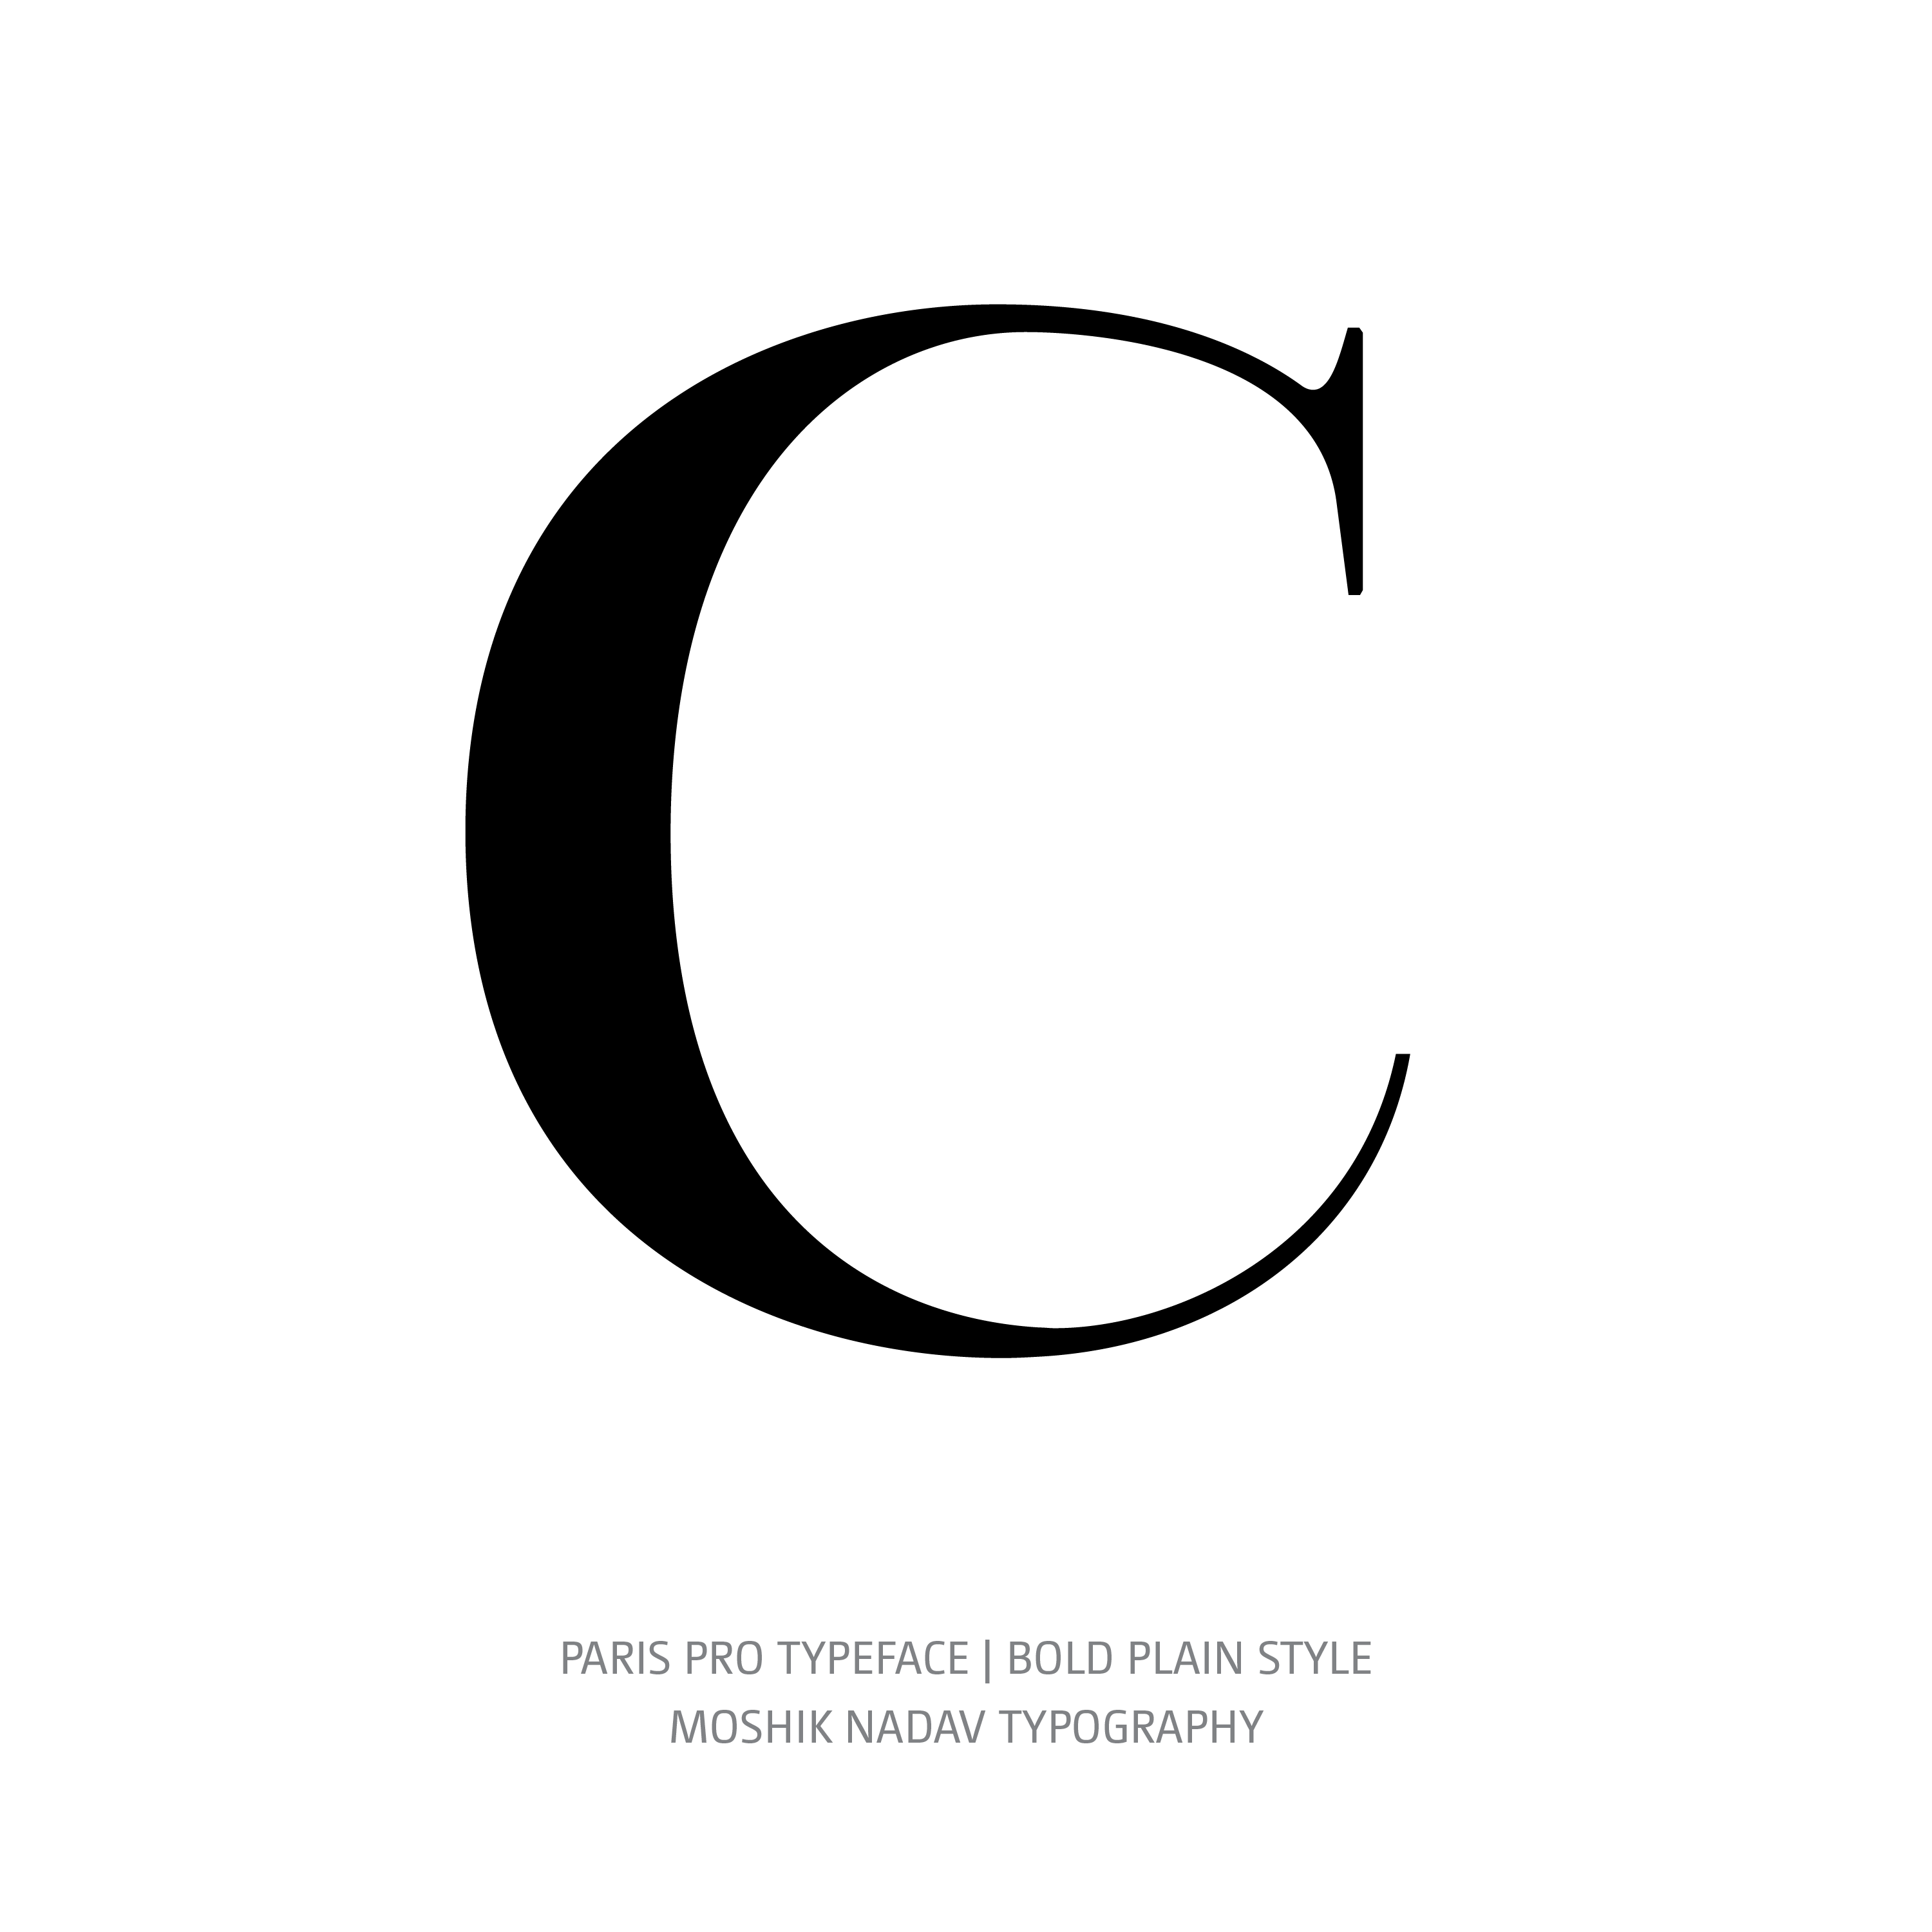 Paris Pro Typeface Bold Plain C